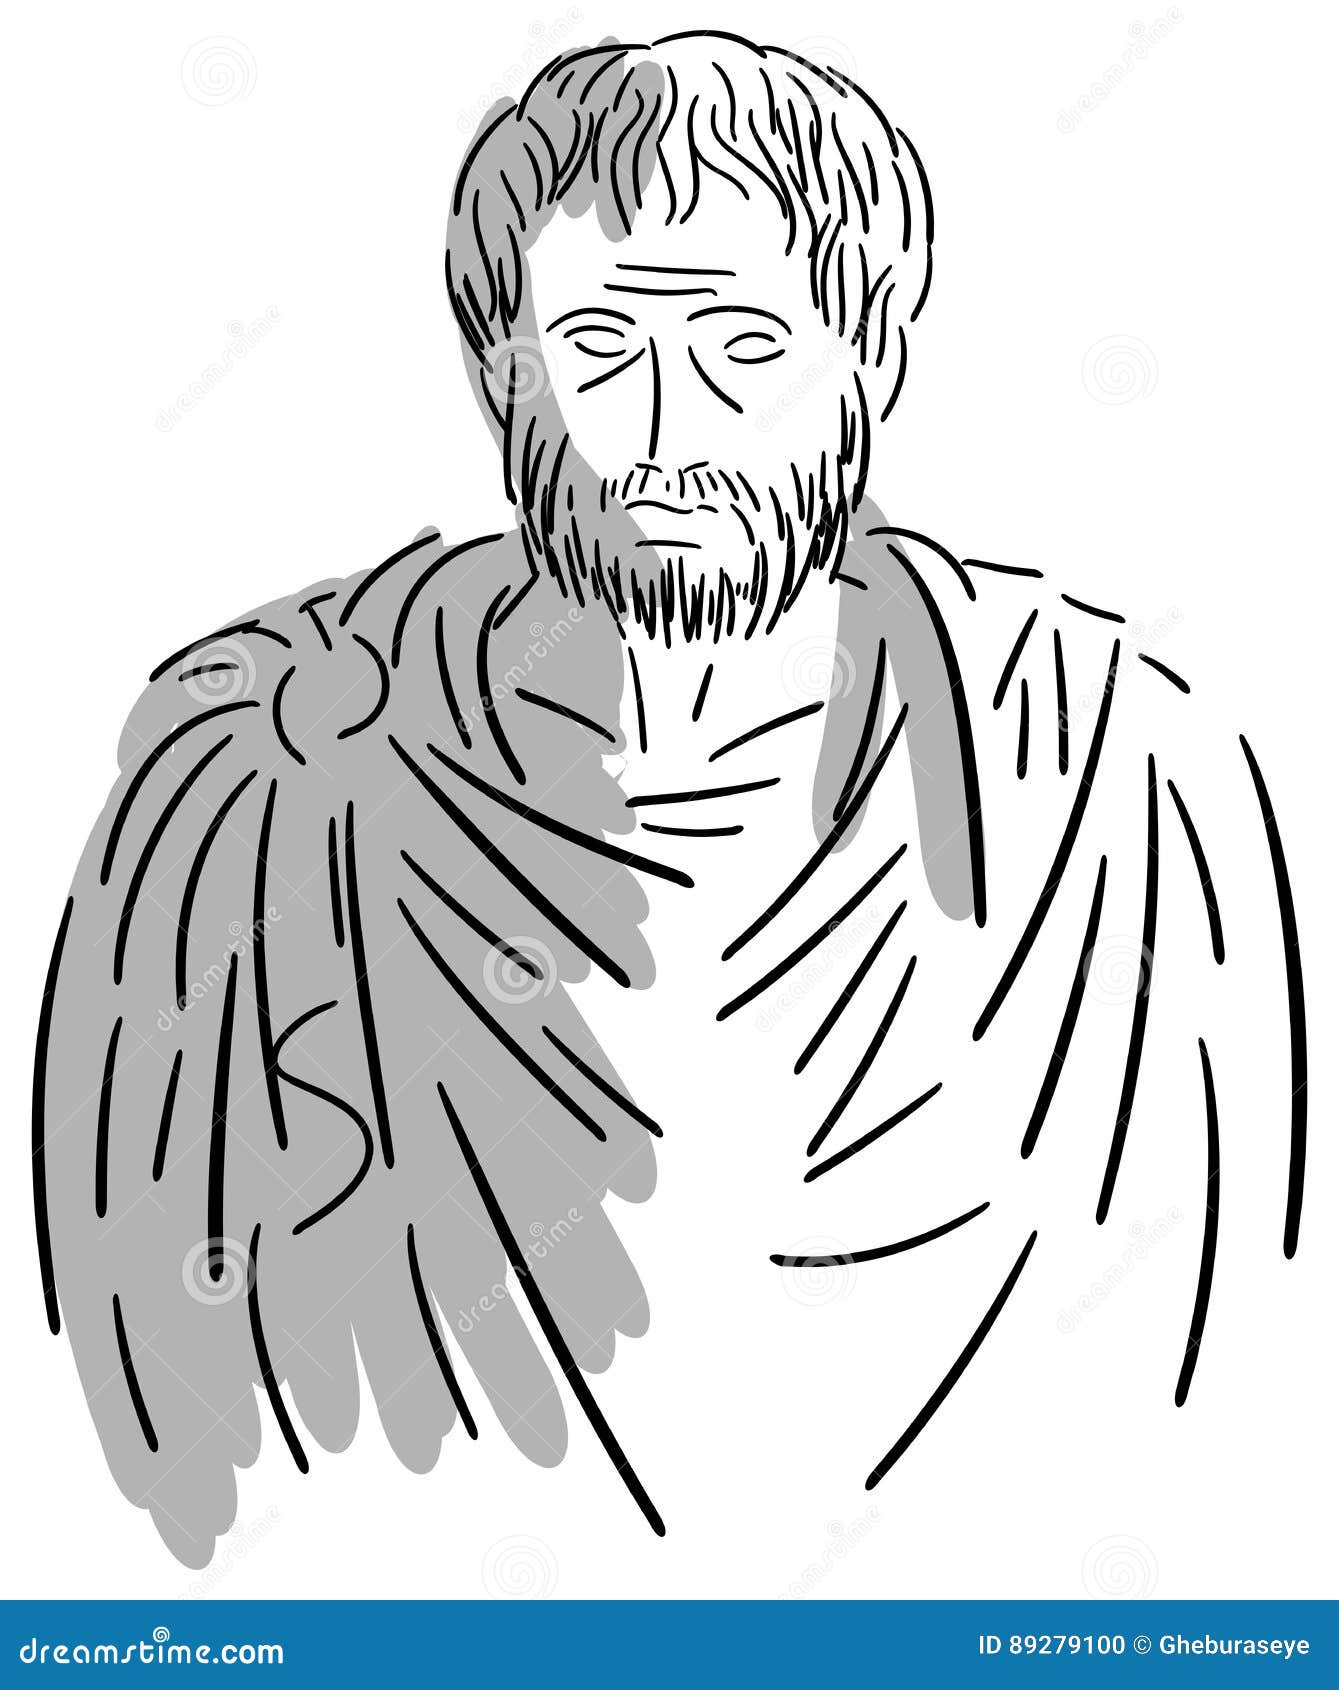 Аристотель портрет карандашом